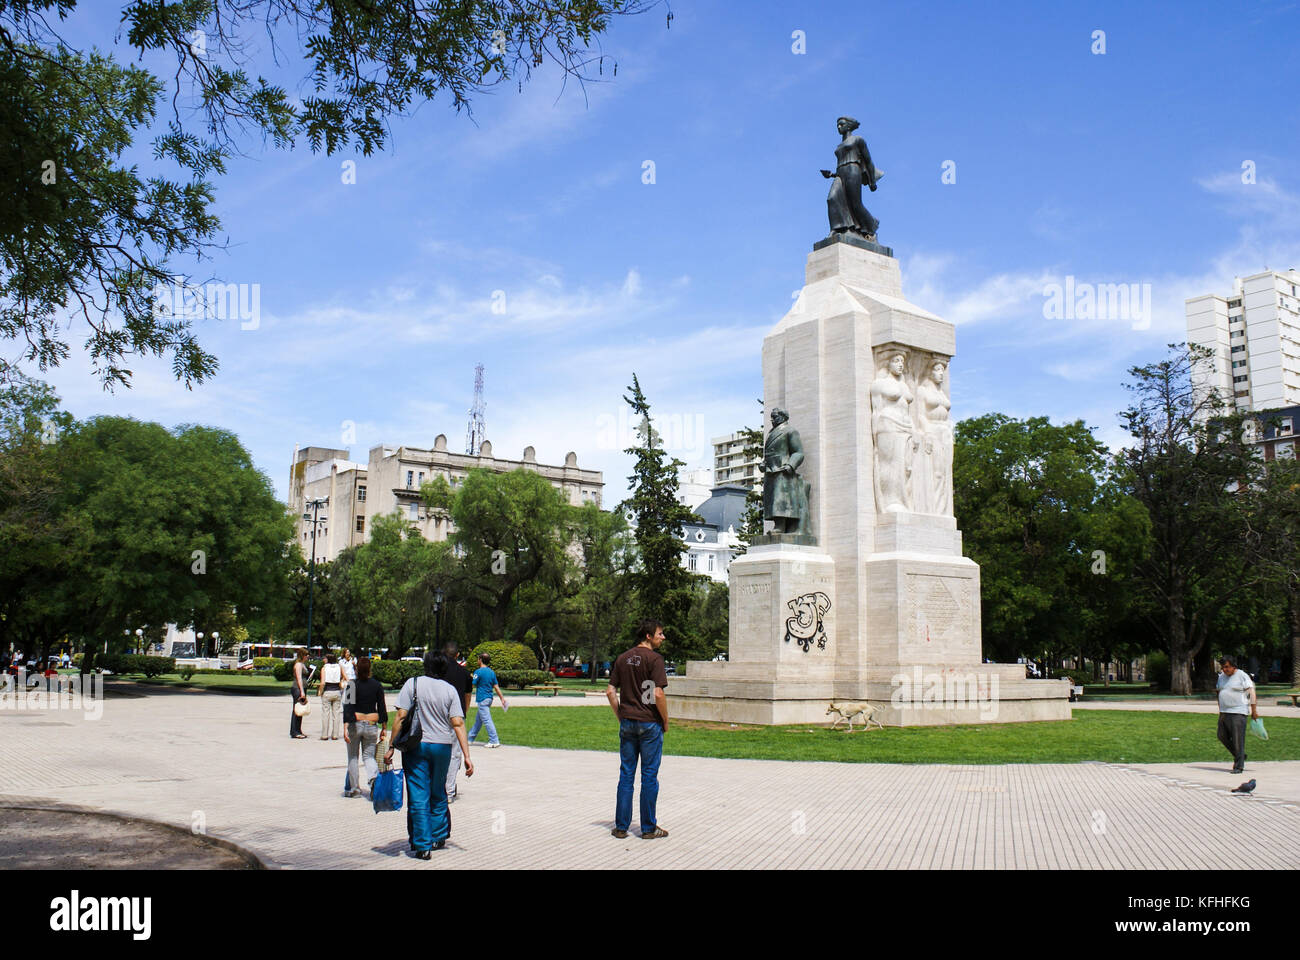 Plaza Rivadavia, Bahia Blanca, Argentina Stock Photo